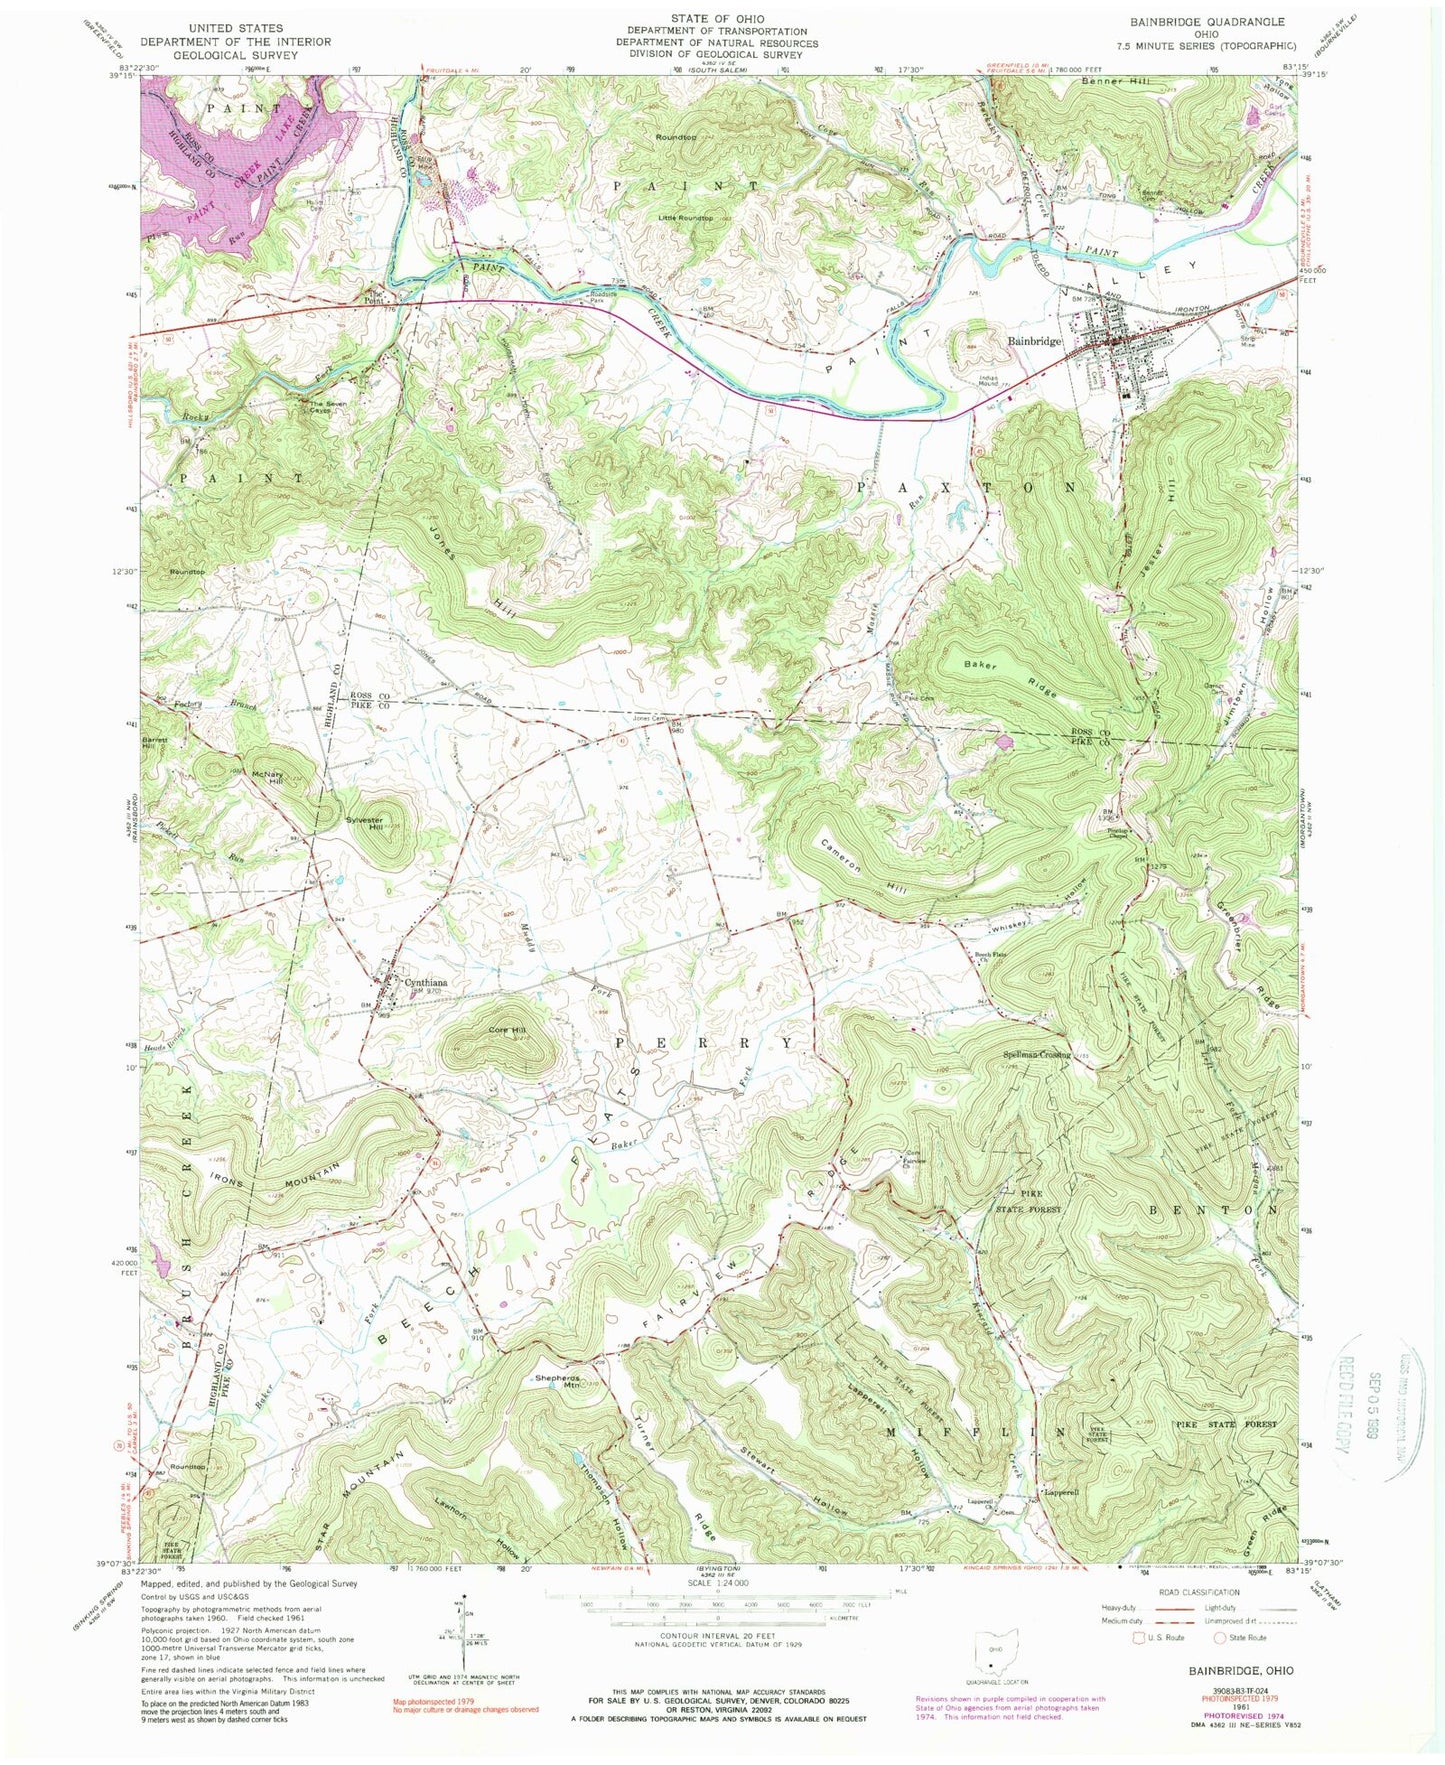 Classic USGS Bainbridge Ohio 7.5'x7.5' Topo Map Image